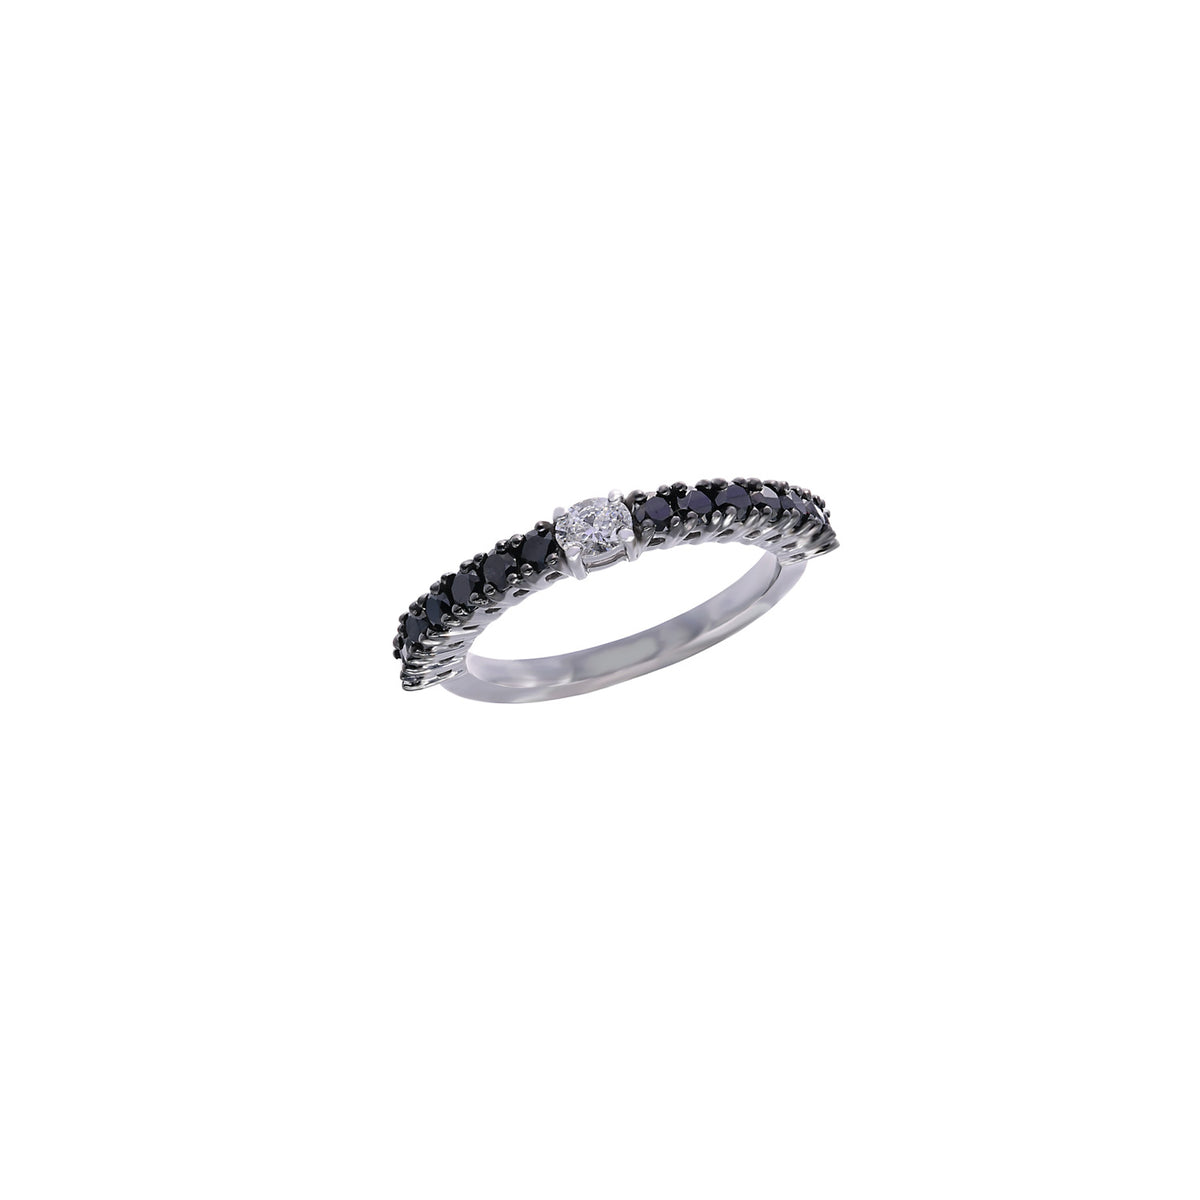 White and black diamond ring. Black diamond eternity ring. Eternity ring. Oval diamond ring.